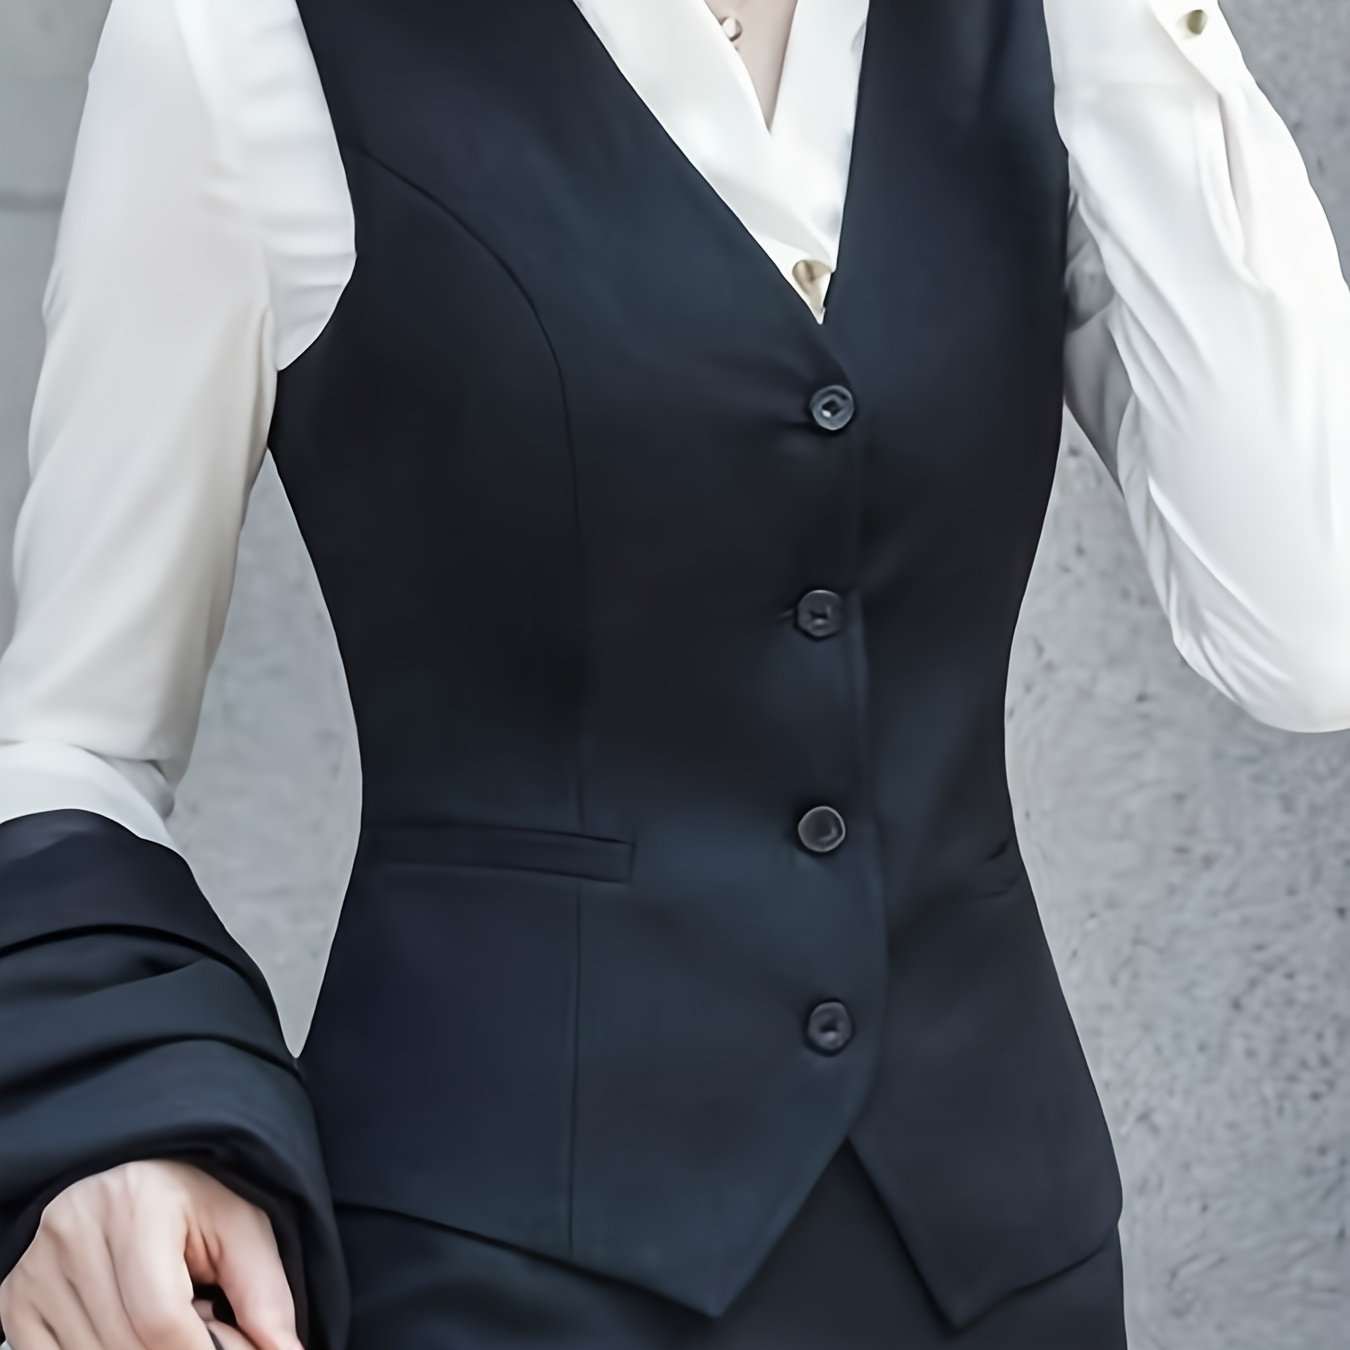 

Single Breasted V Neck Vest, Elegant Sleeveless Outerwear For Office & Work, Women's Clothing